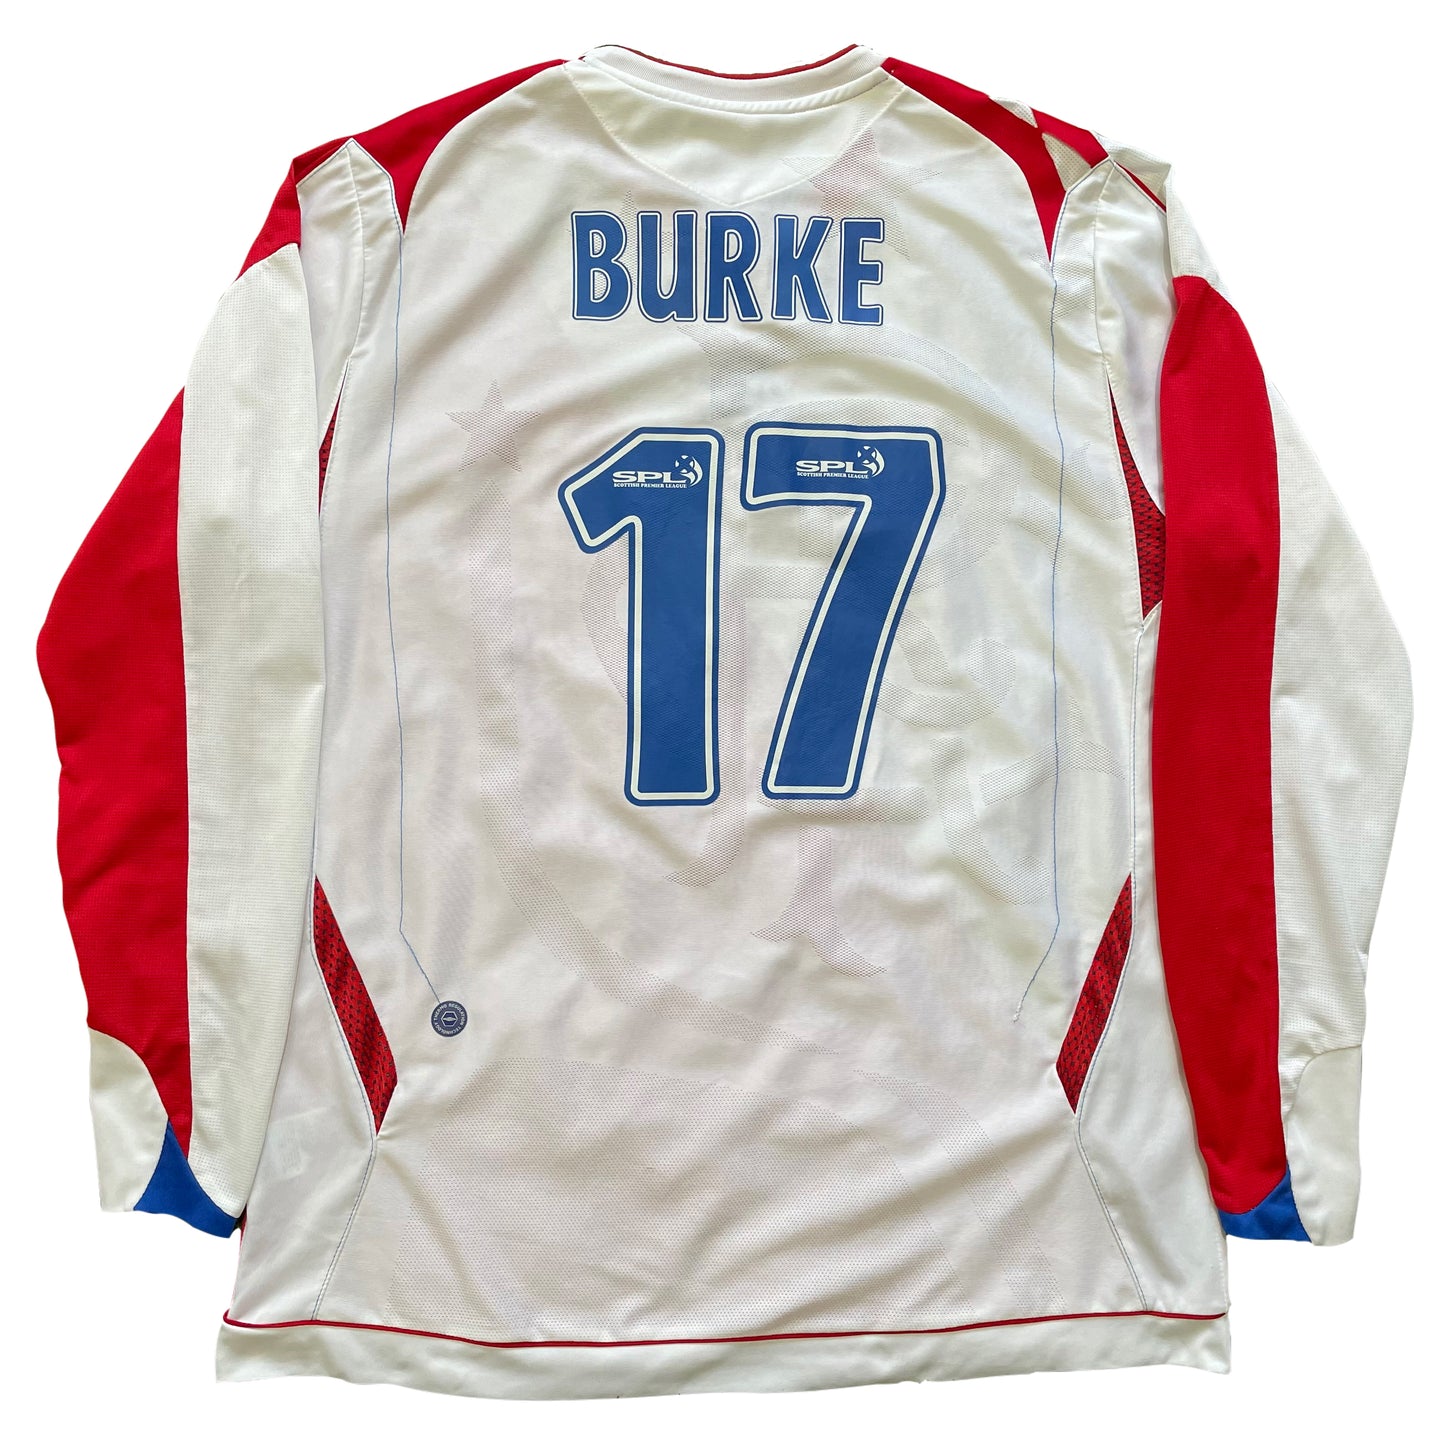 <tc>2006-2007
Rangers camiseta visitante #17 Burke (L)</tc>